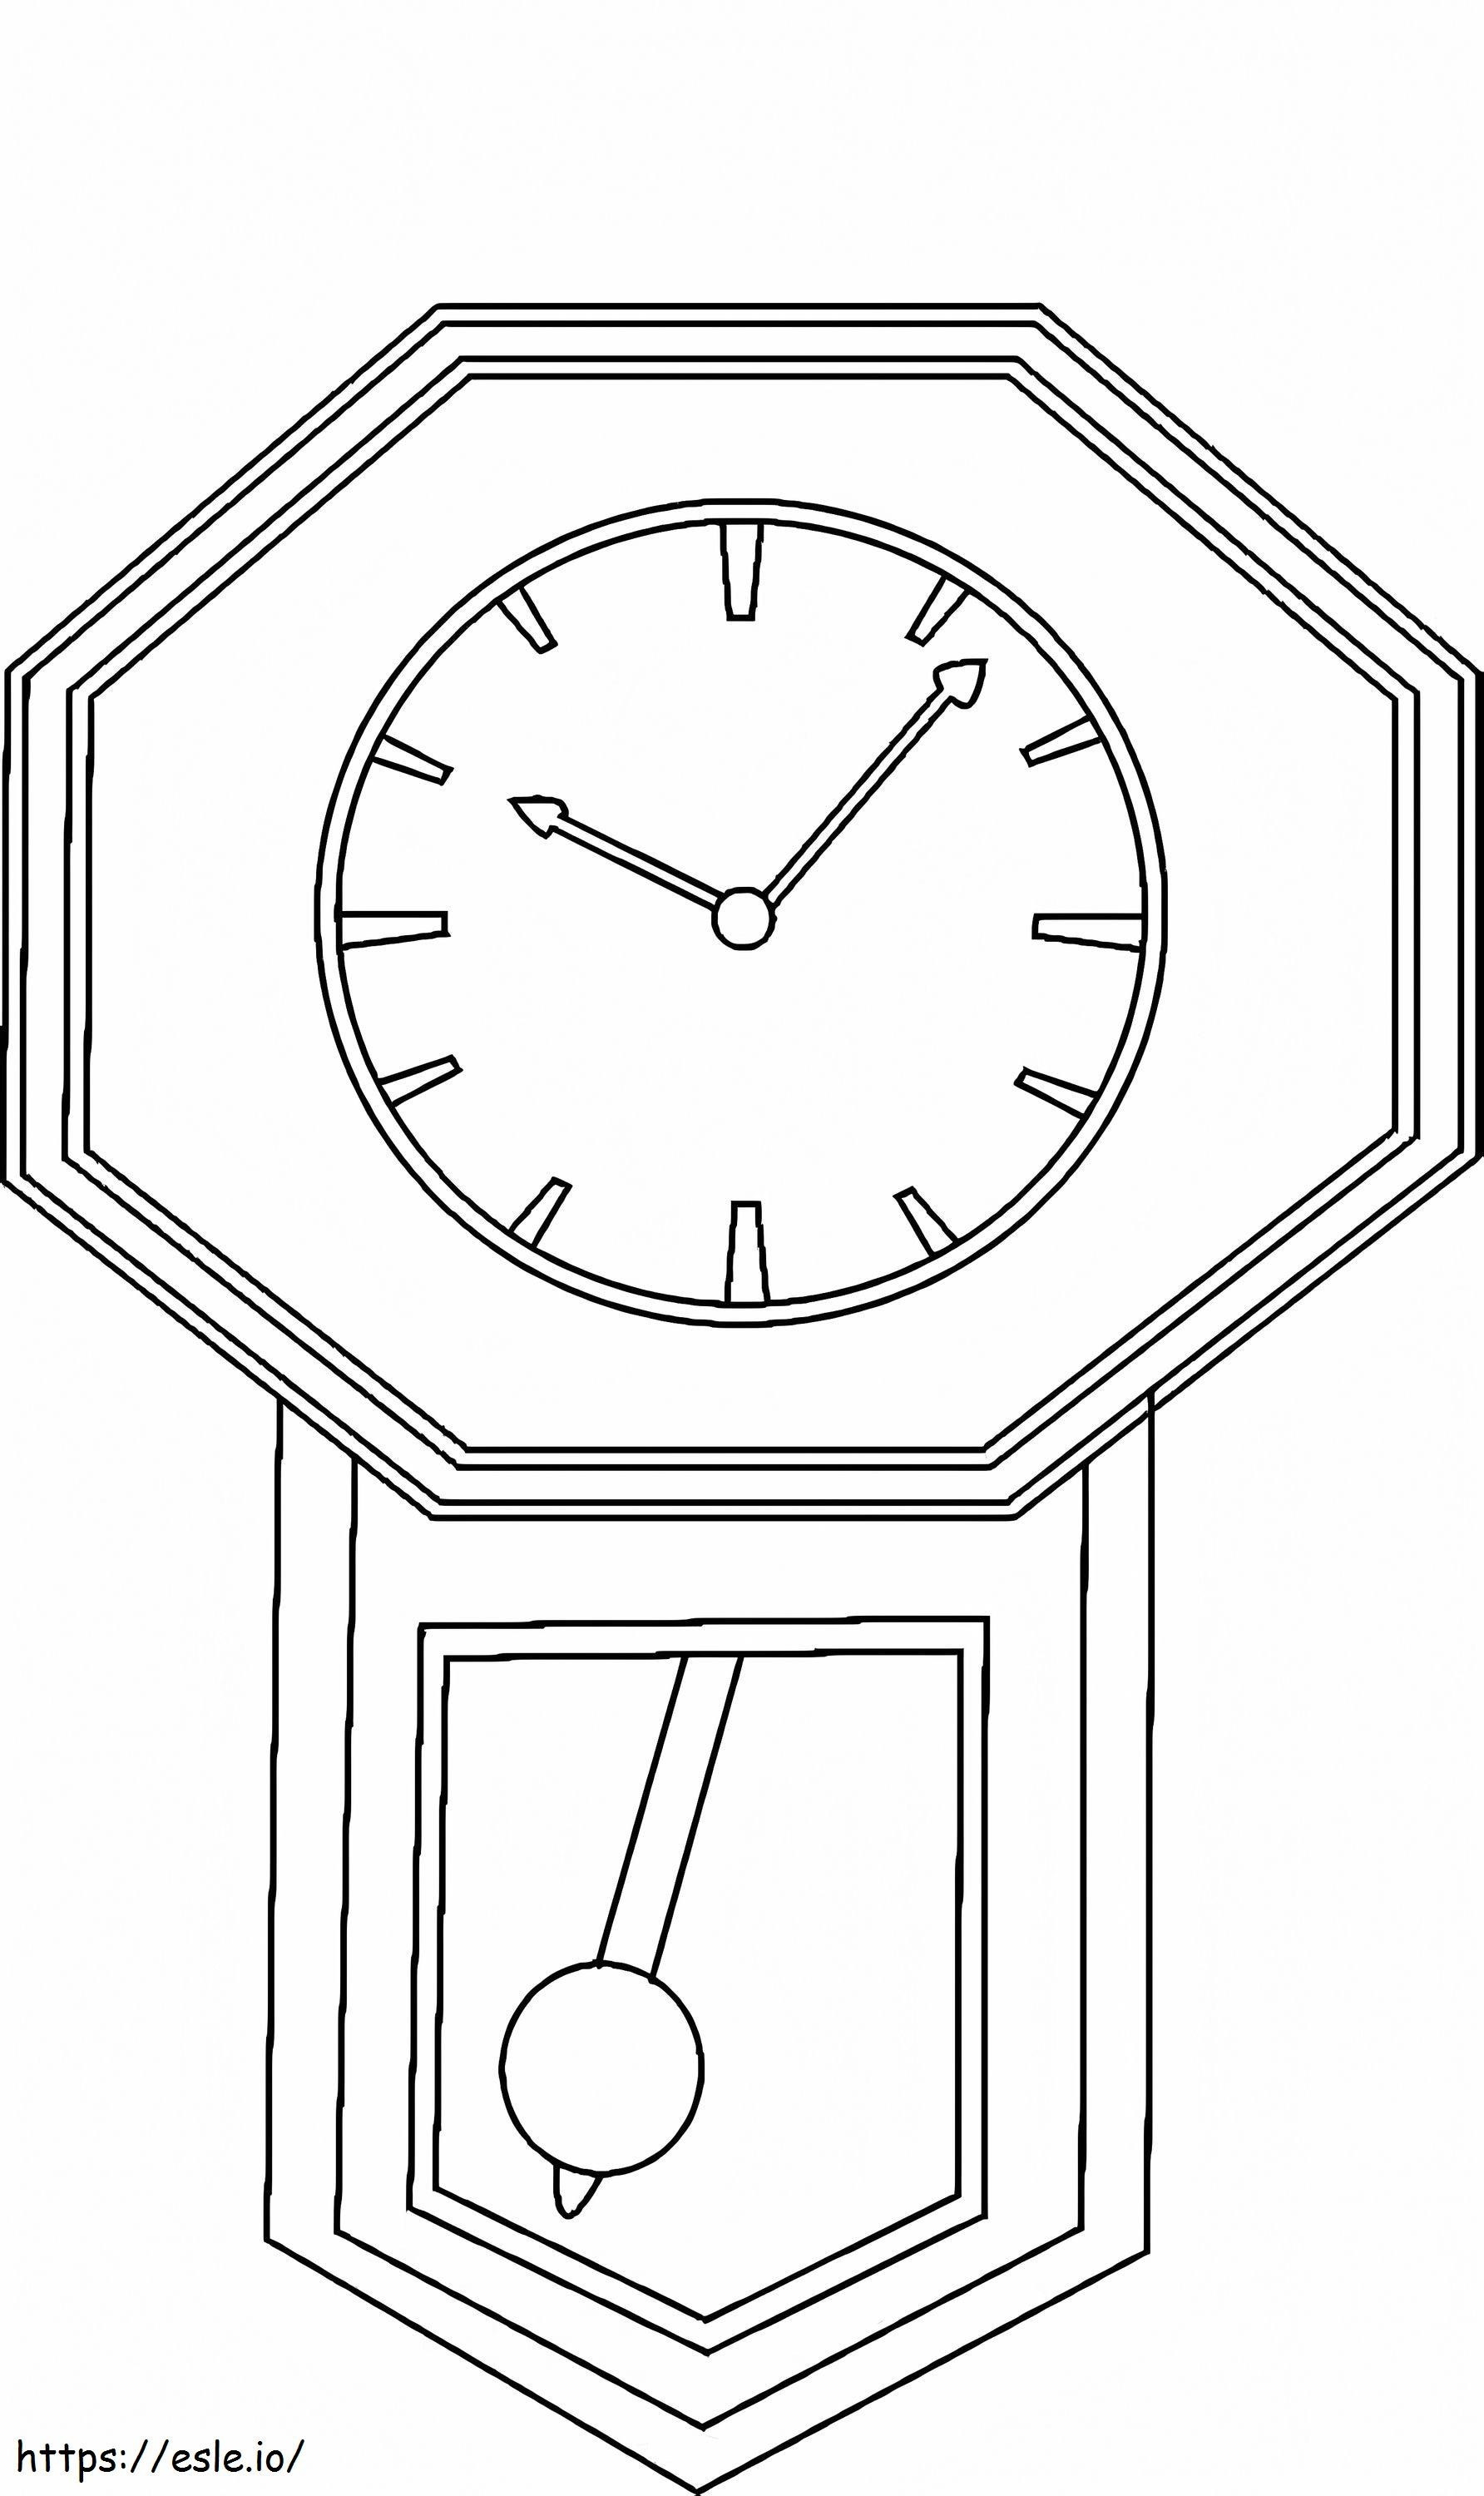 Coloriage Incroyable Horloge à imprimer dessin